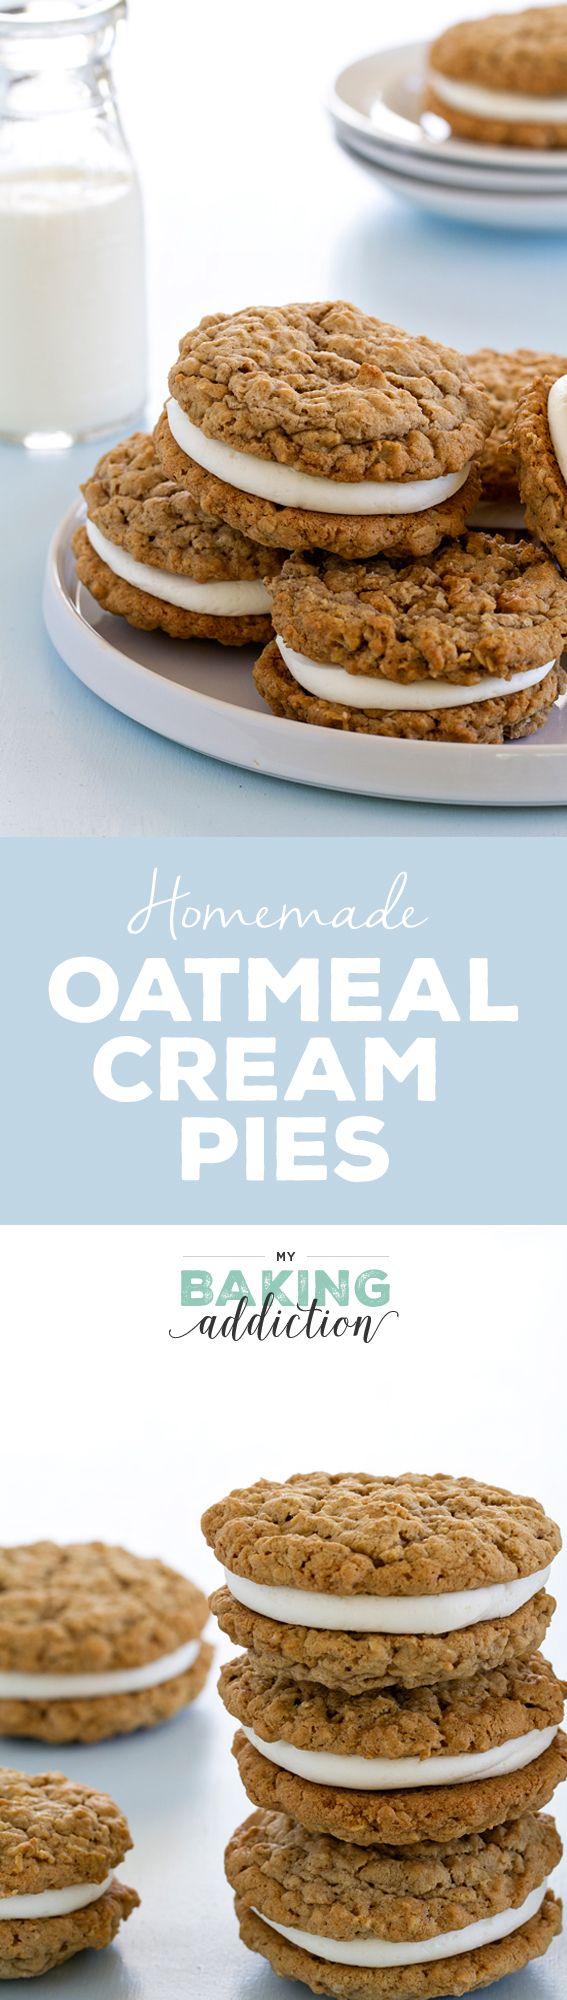 Hochzeit - Homemade Oatmeal Cream Pies